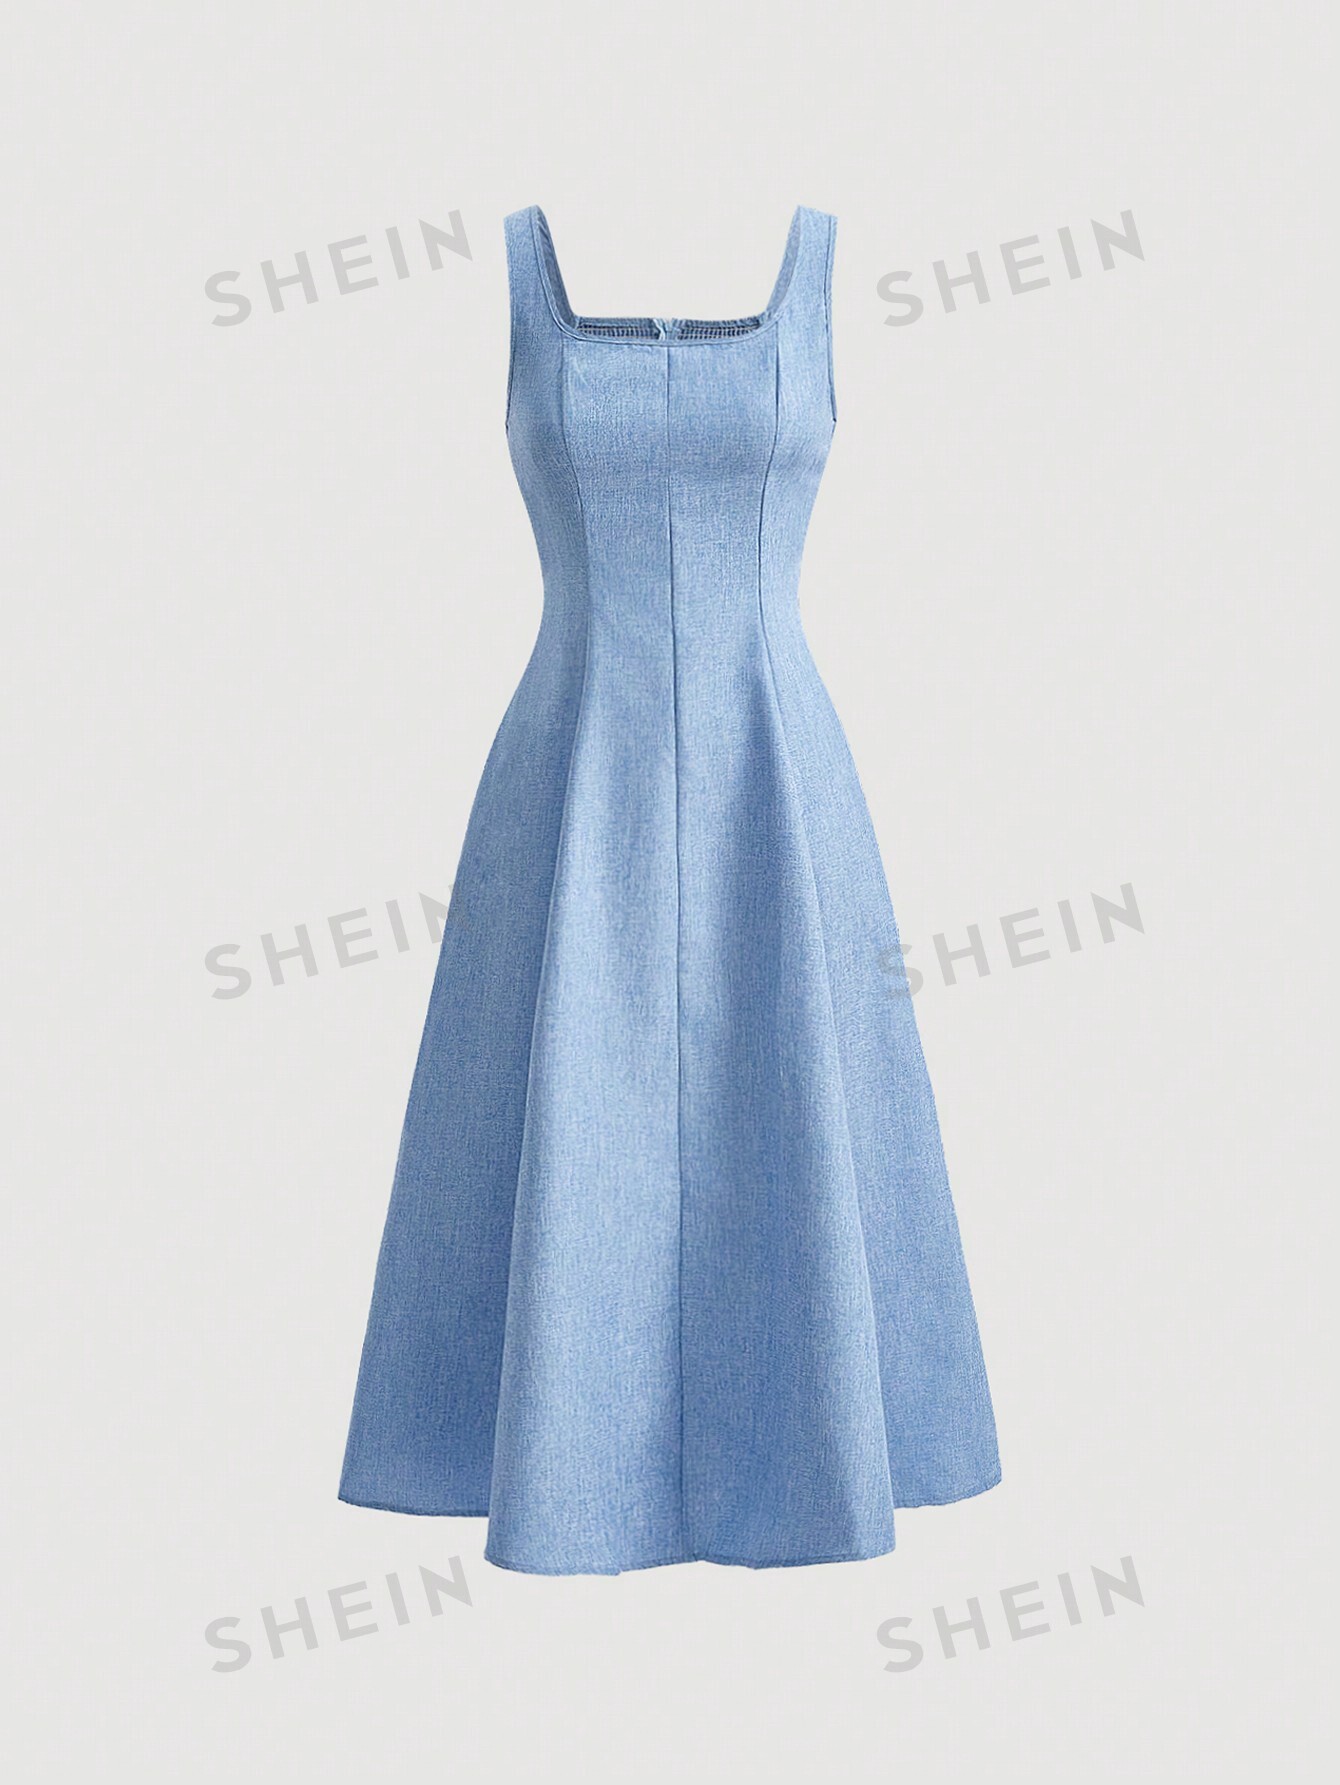 shein mod однотонное платье с гофрированной спиной и расклешенным подолом синий SHEIN MOD однотонное платье с гофрированной спиной и расклешенным подолом, синий